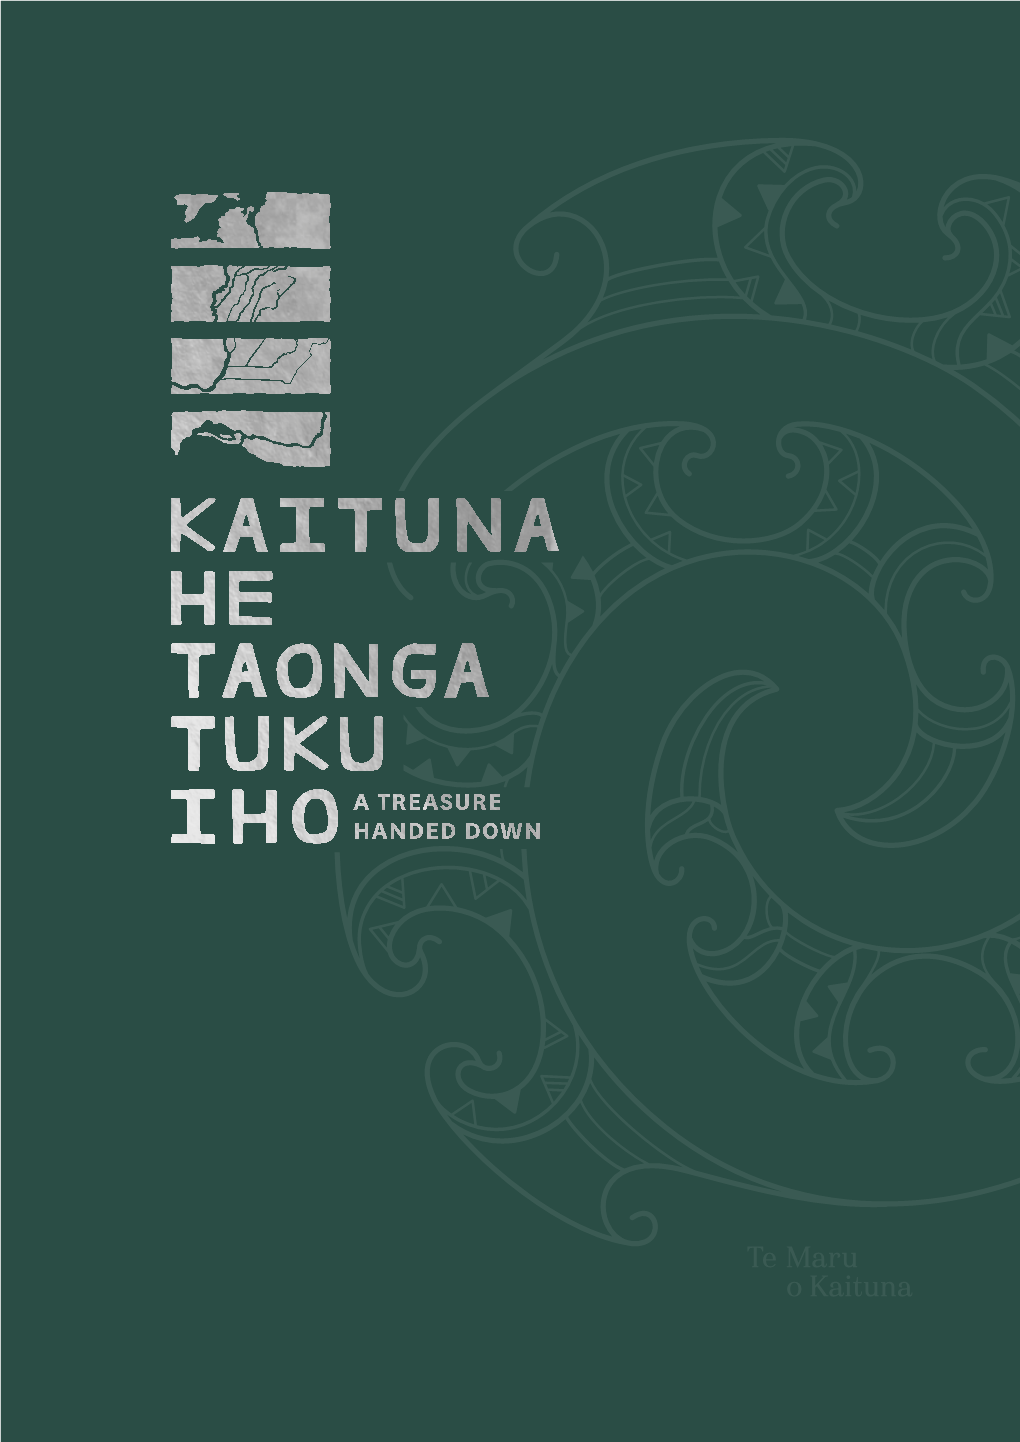 Kaituna He Taonga Tuku Iho – a Treasure Handed Down